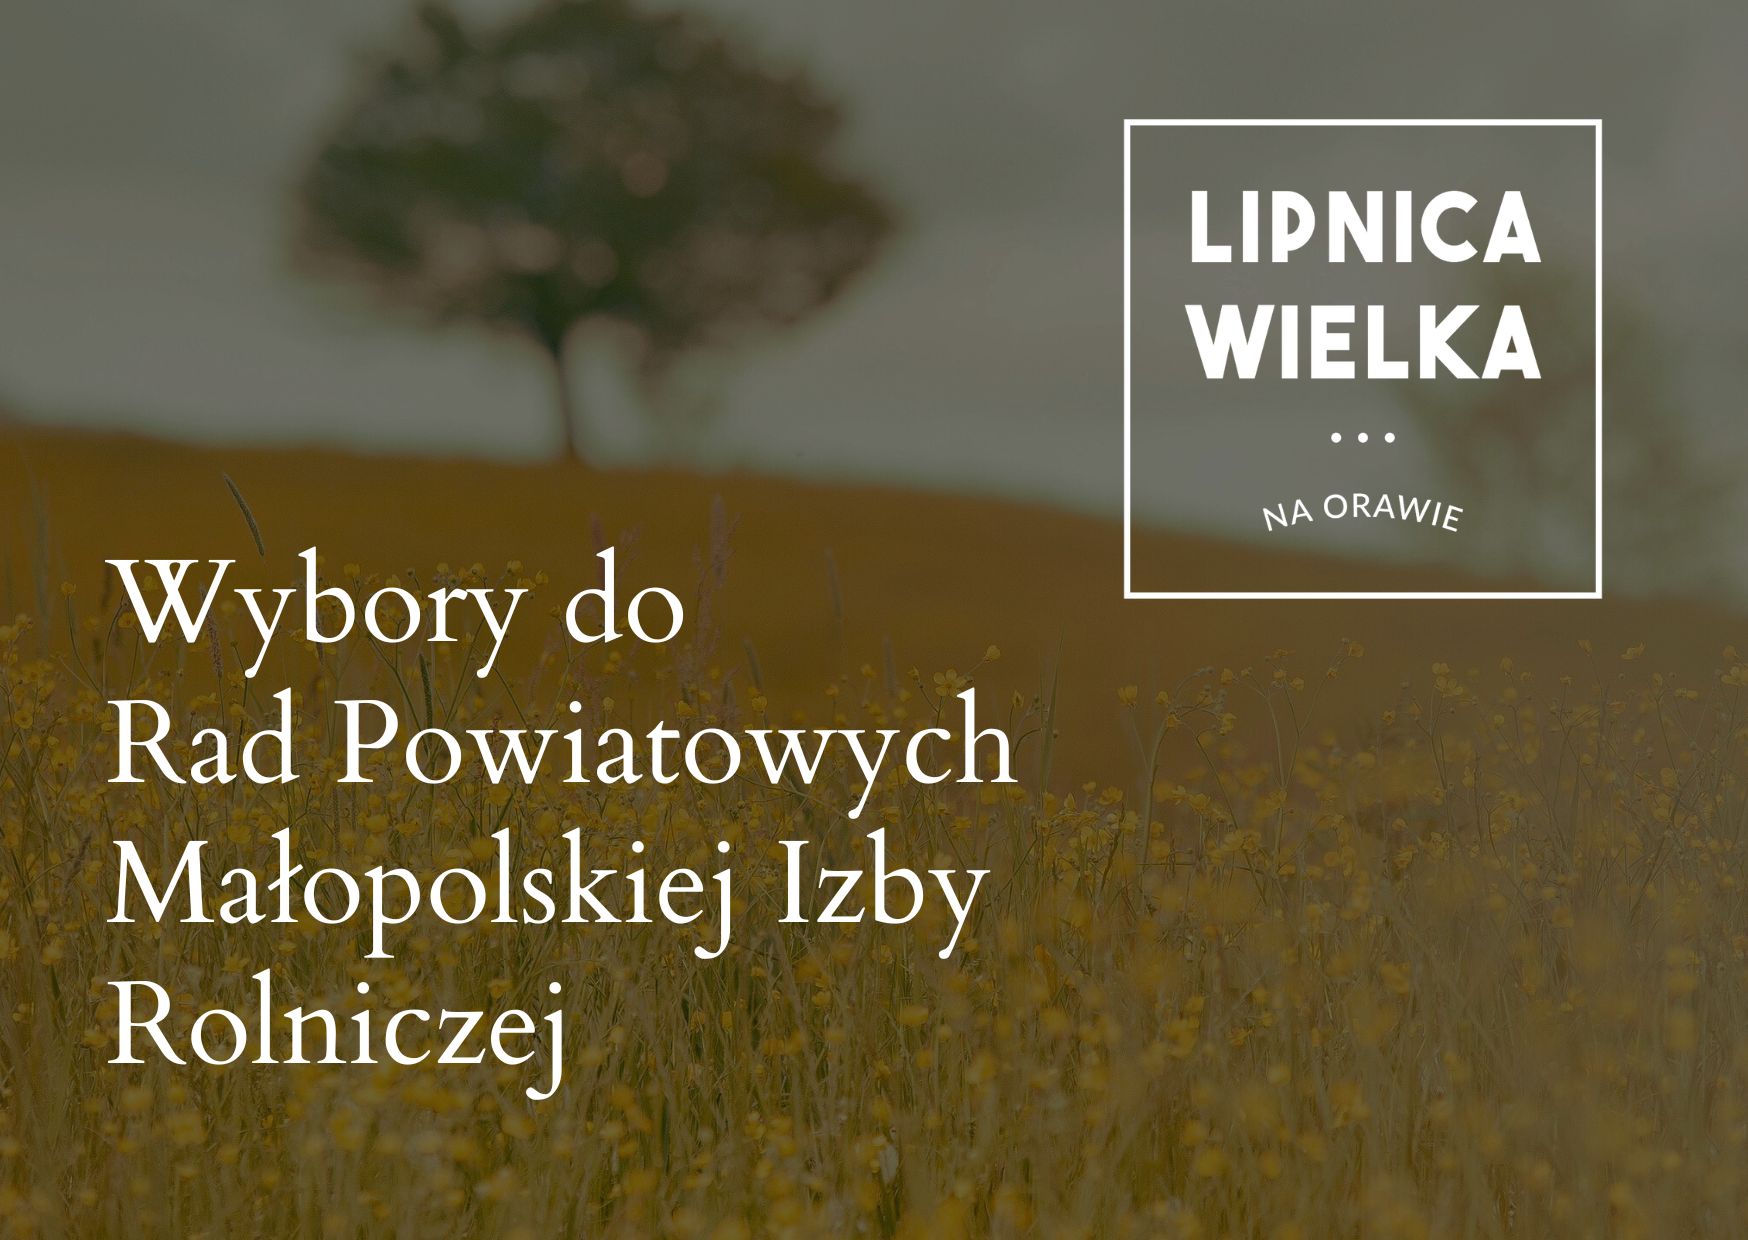 Obwieszczenie Komisji Okręgowej w sprawie wyborów do Rad Powiatowych Małopolskiej Izby Rolniczej